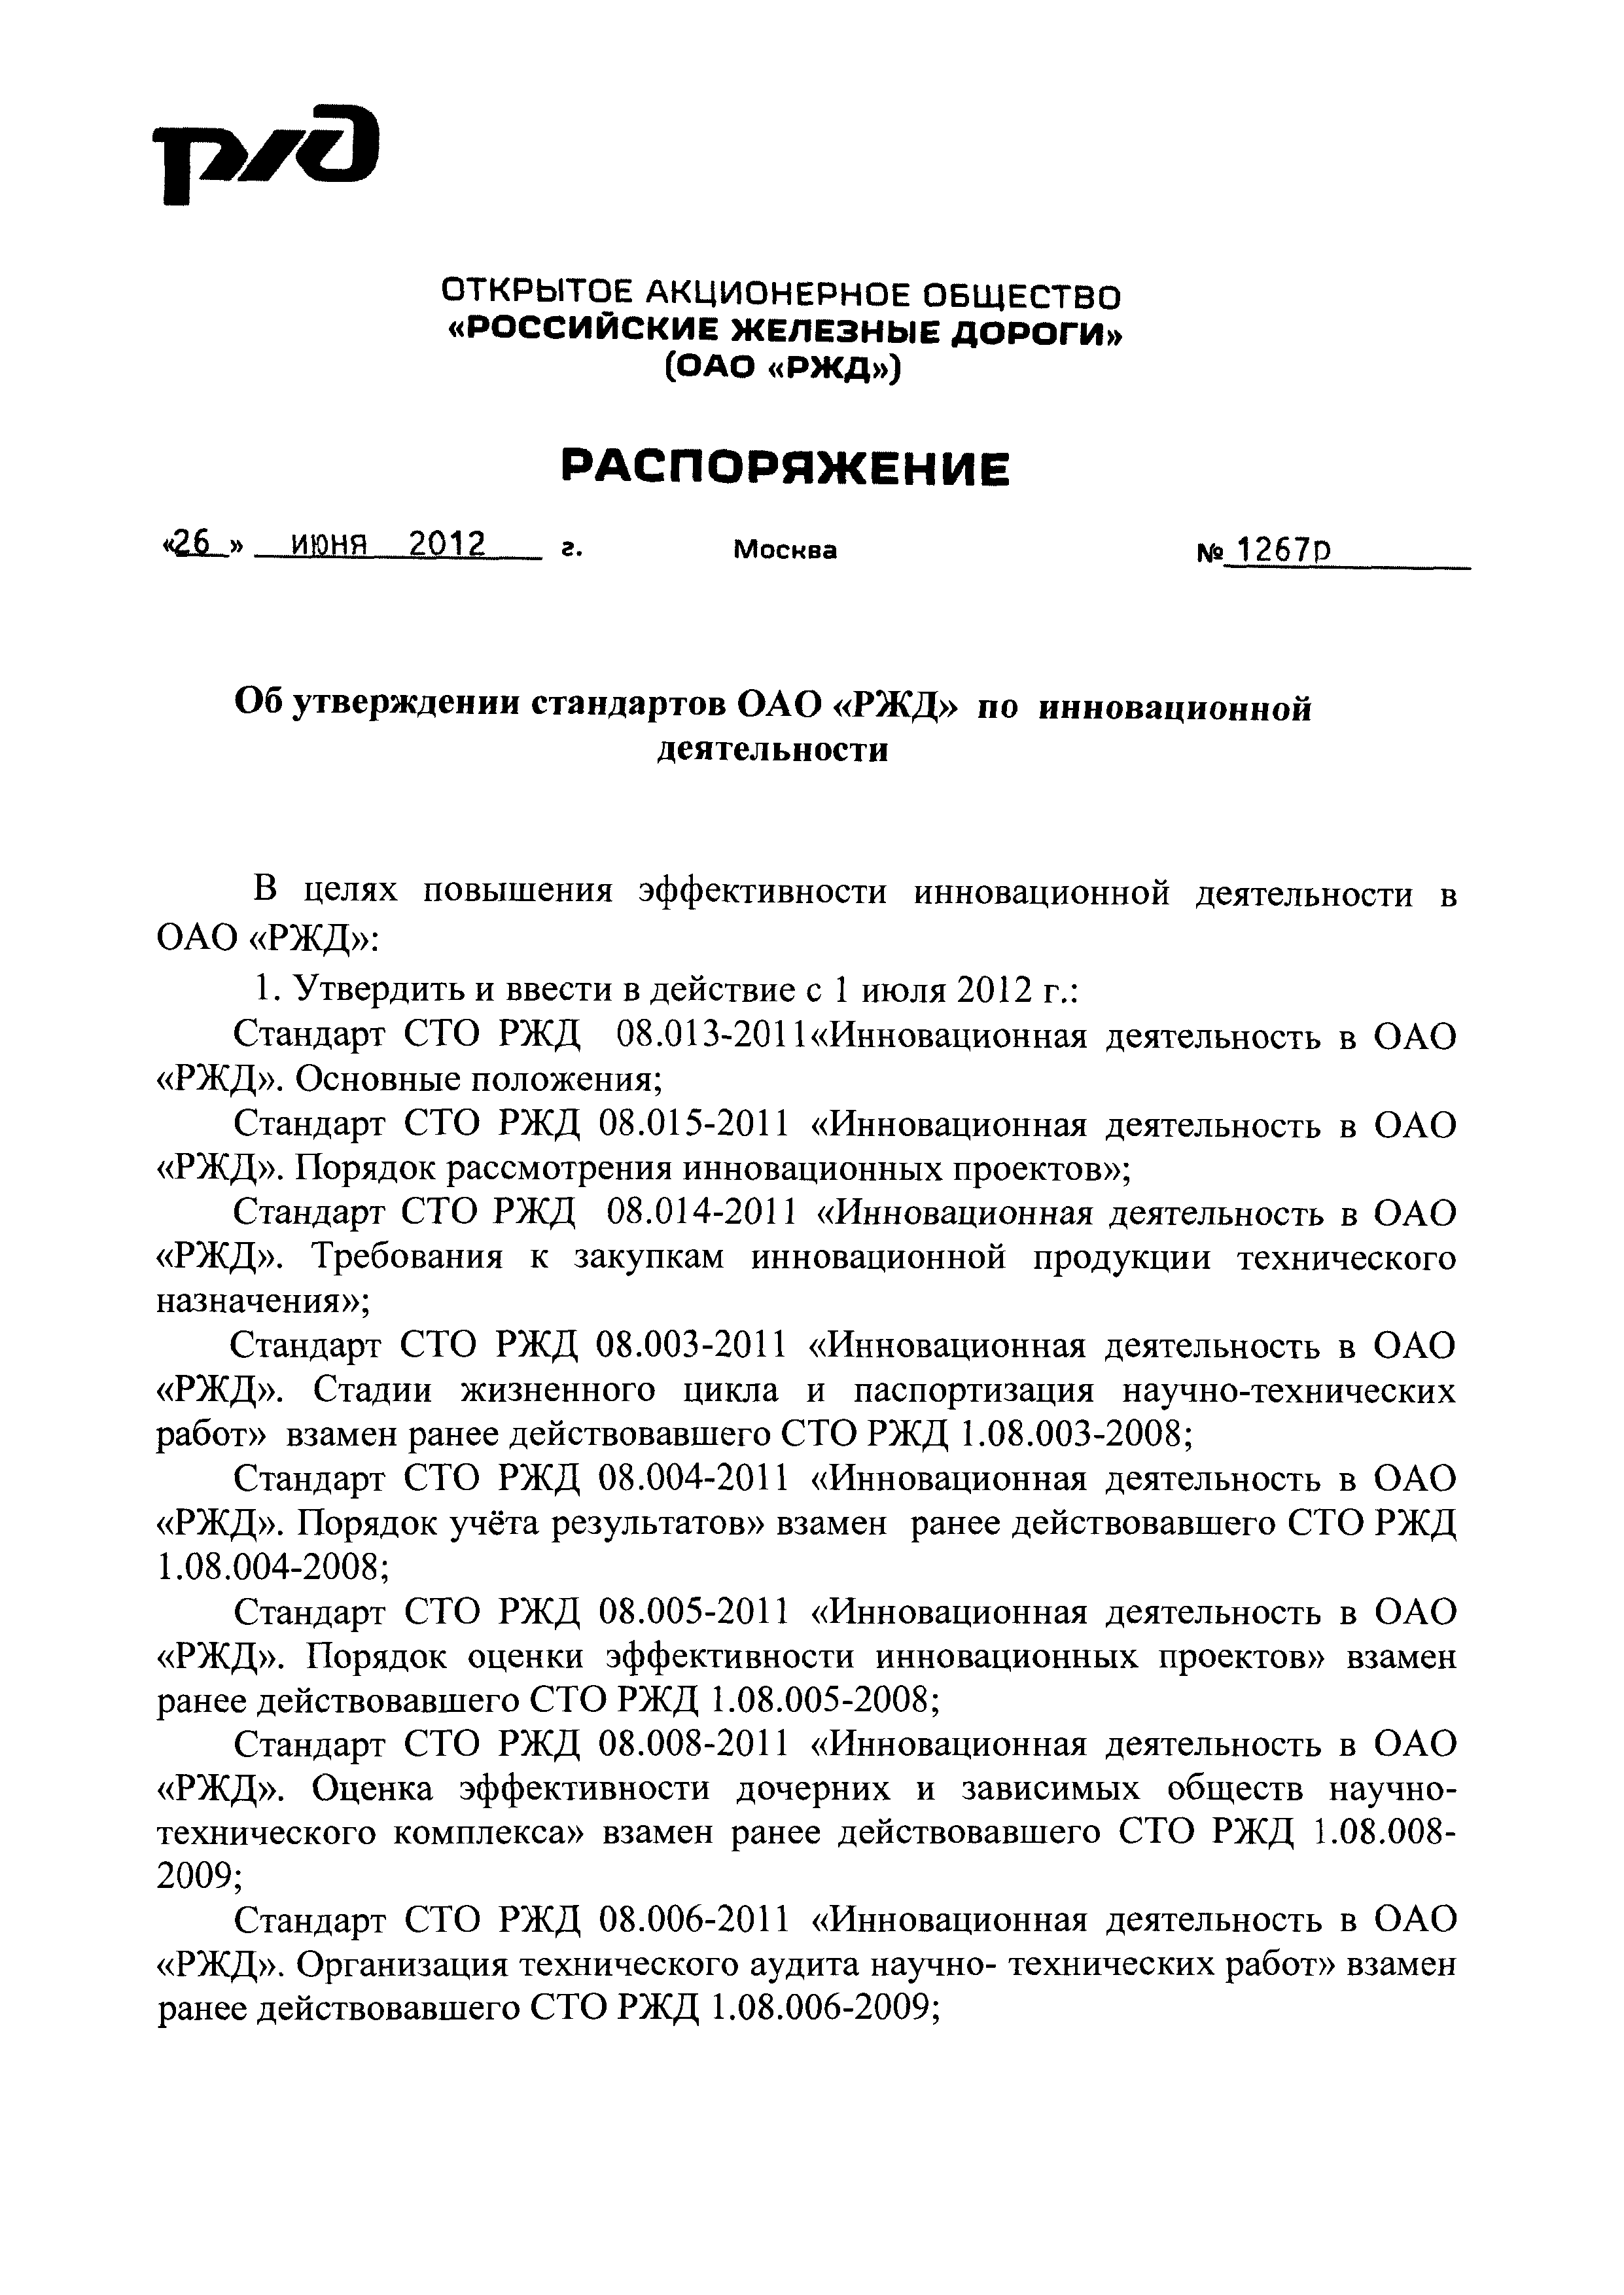 СТО РЖД 08.005-2011